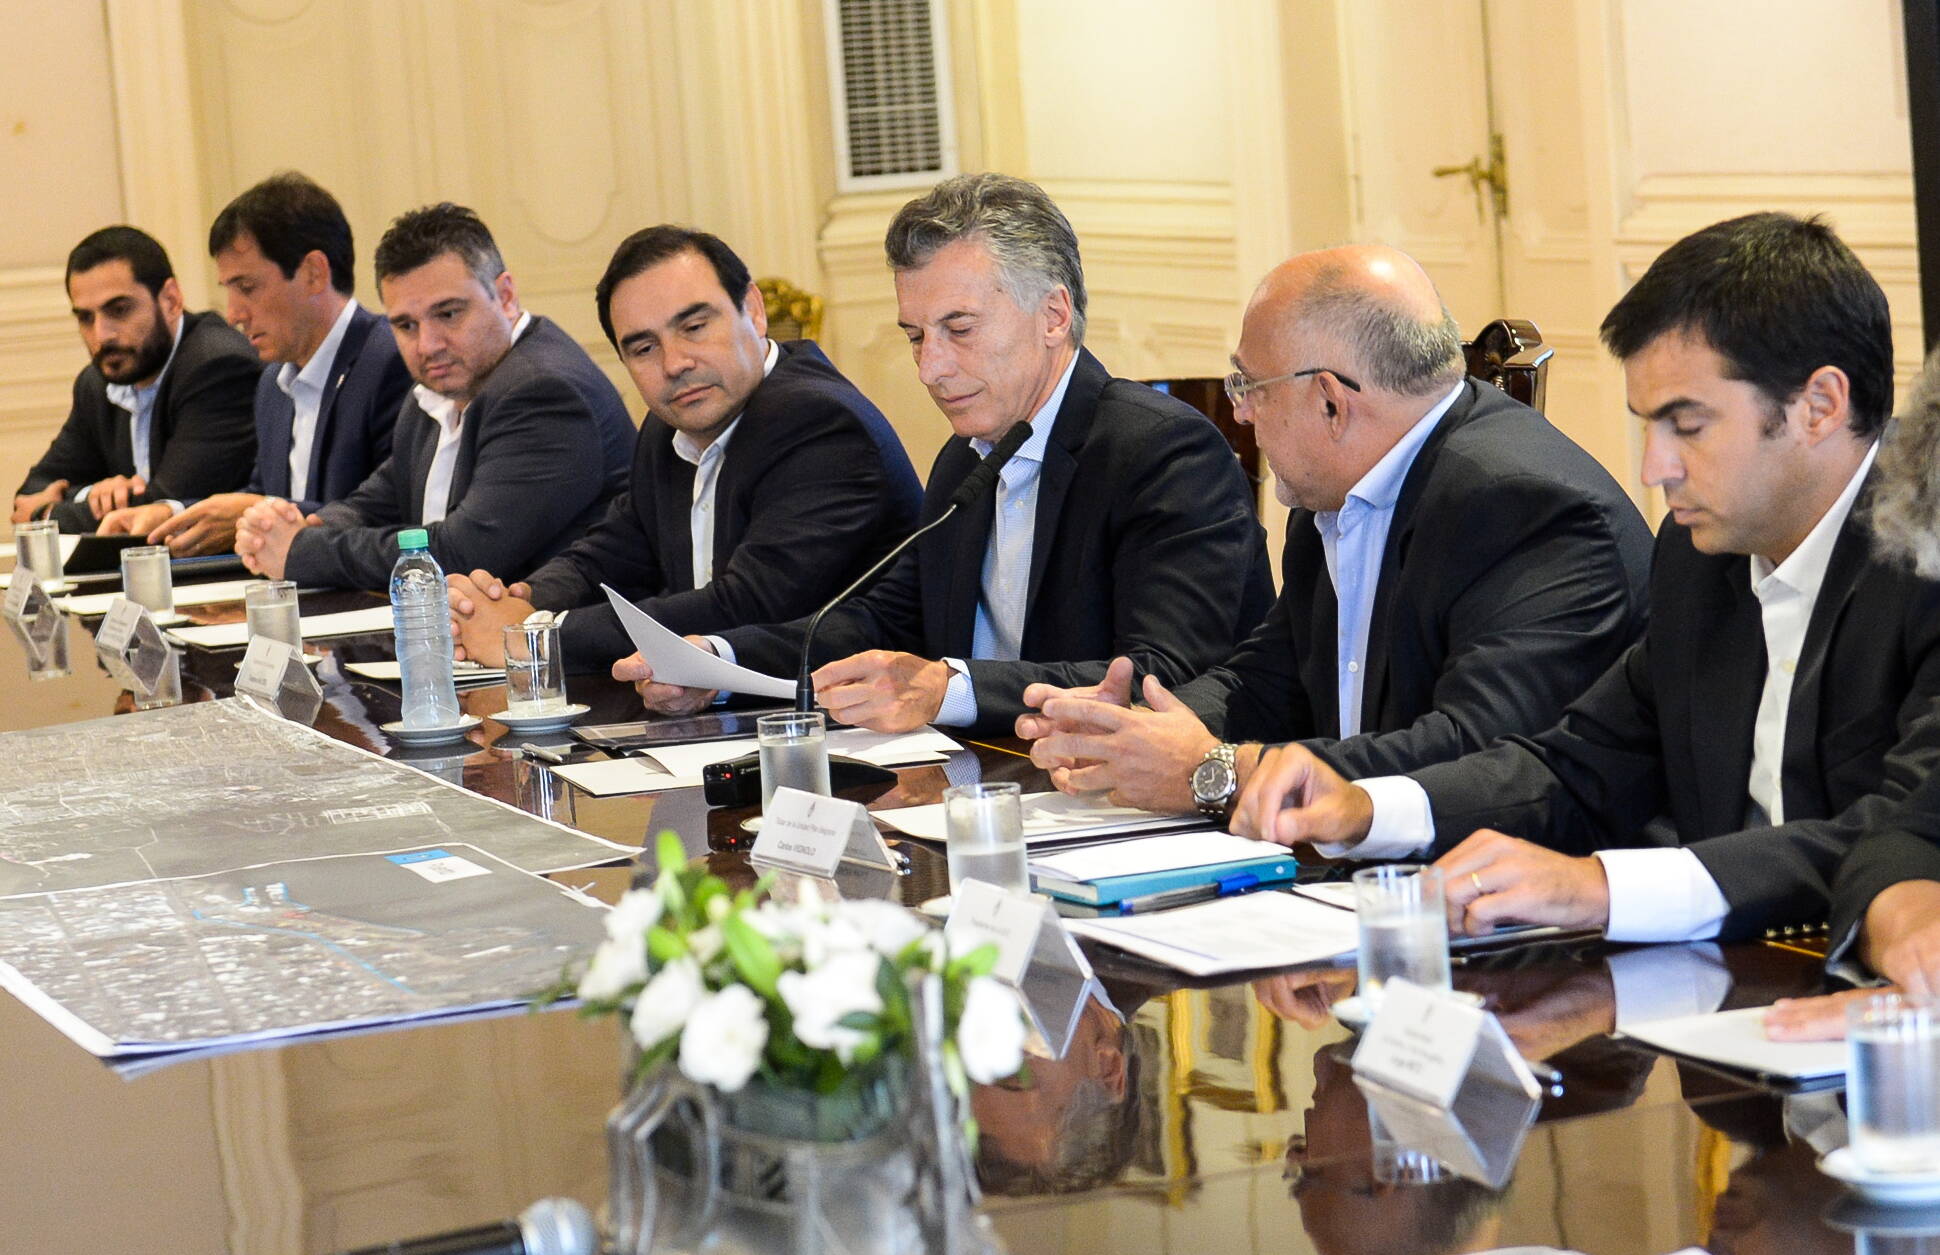 El Presidente encabezó una reunión de trabajo para analizar el proyecto de Desarrollo Costero de la Ciudad de Corrientes